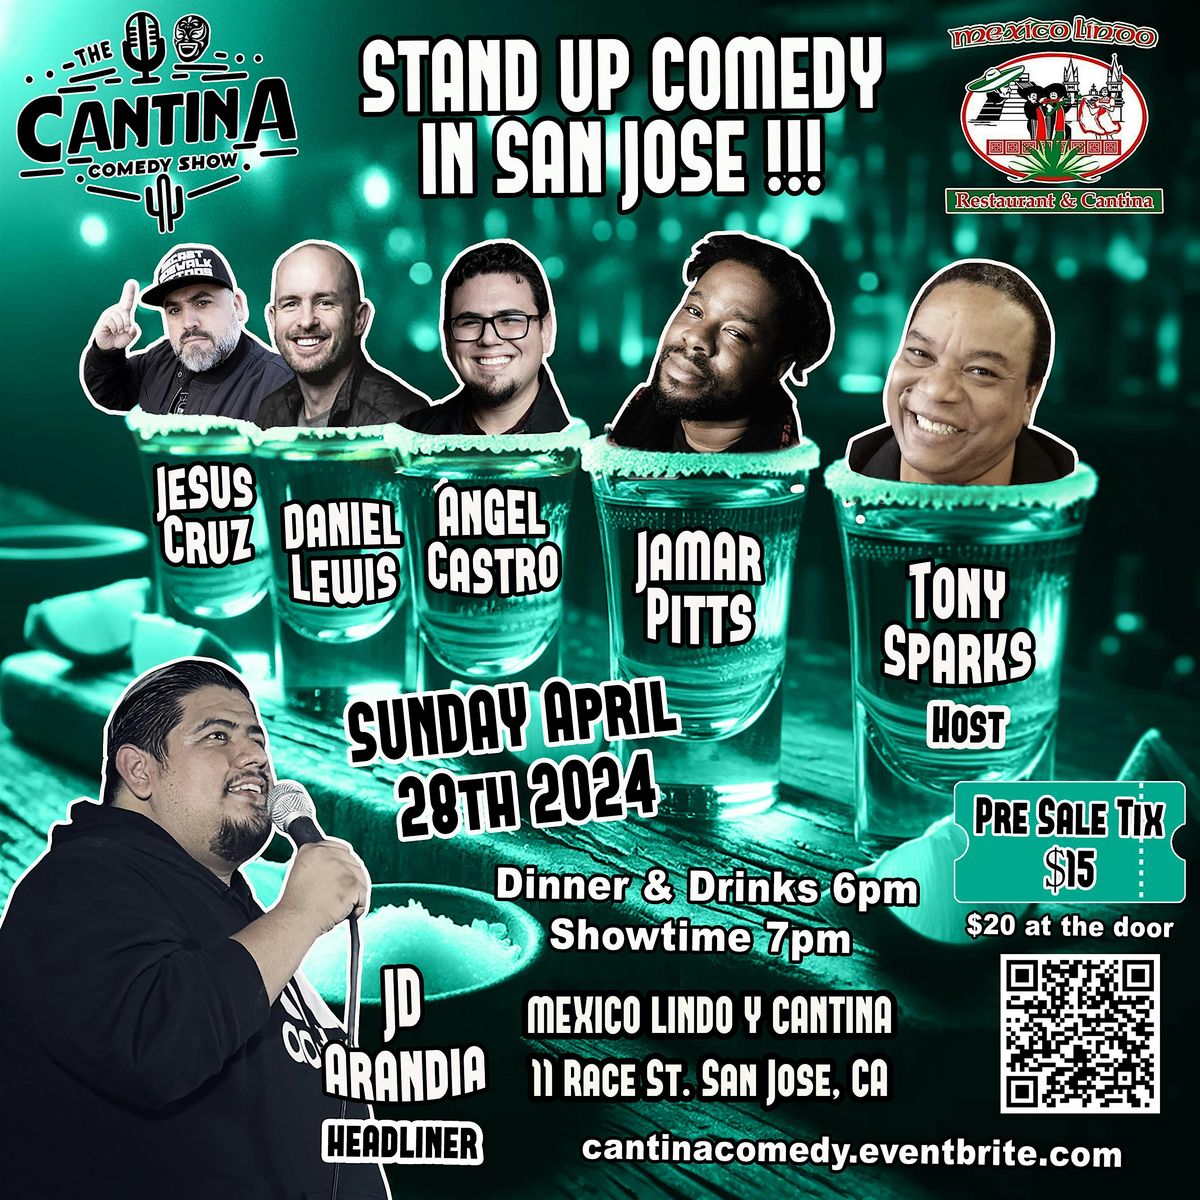 The Cantina Comedy Show at Mexico Lindo Restaurant